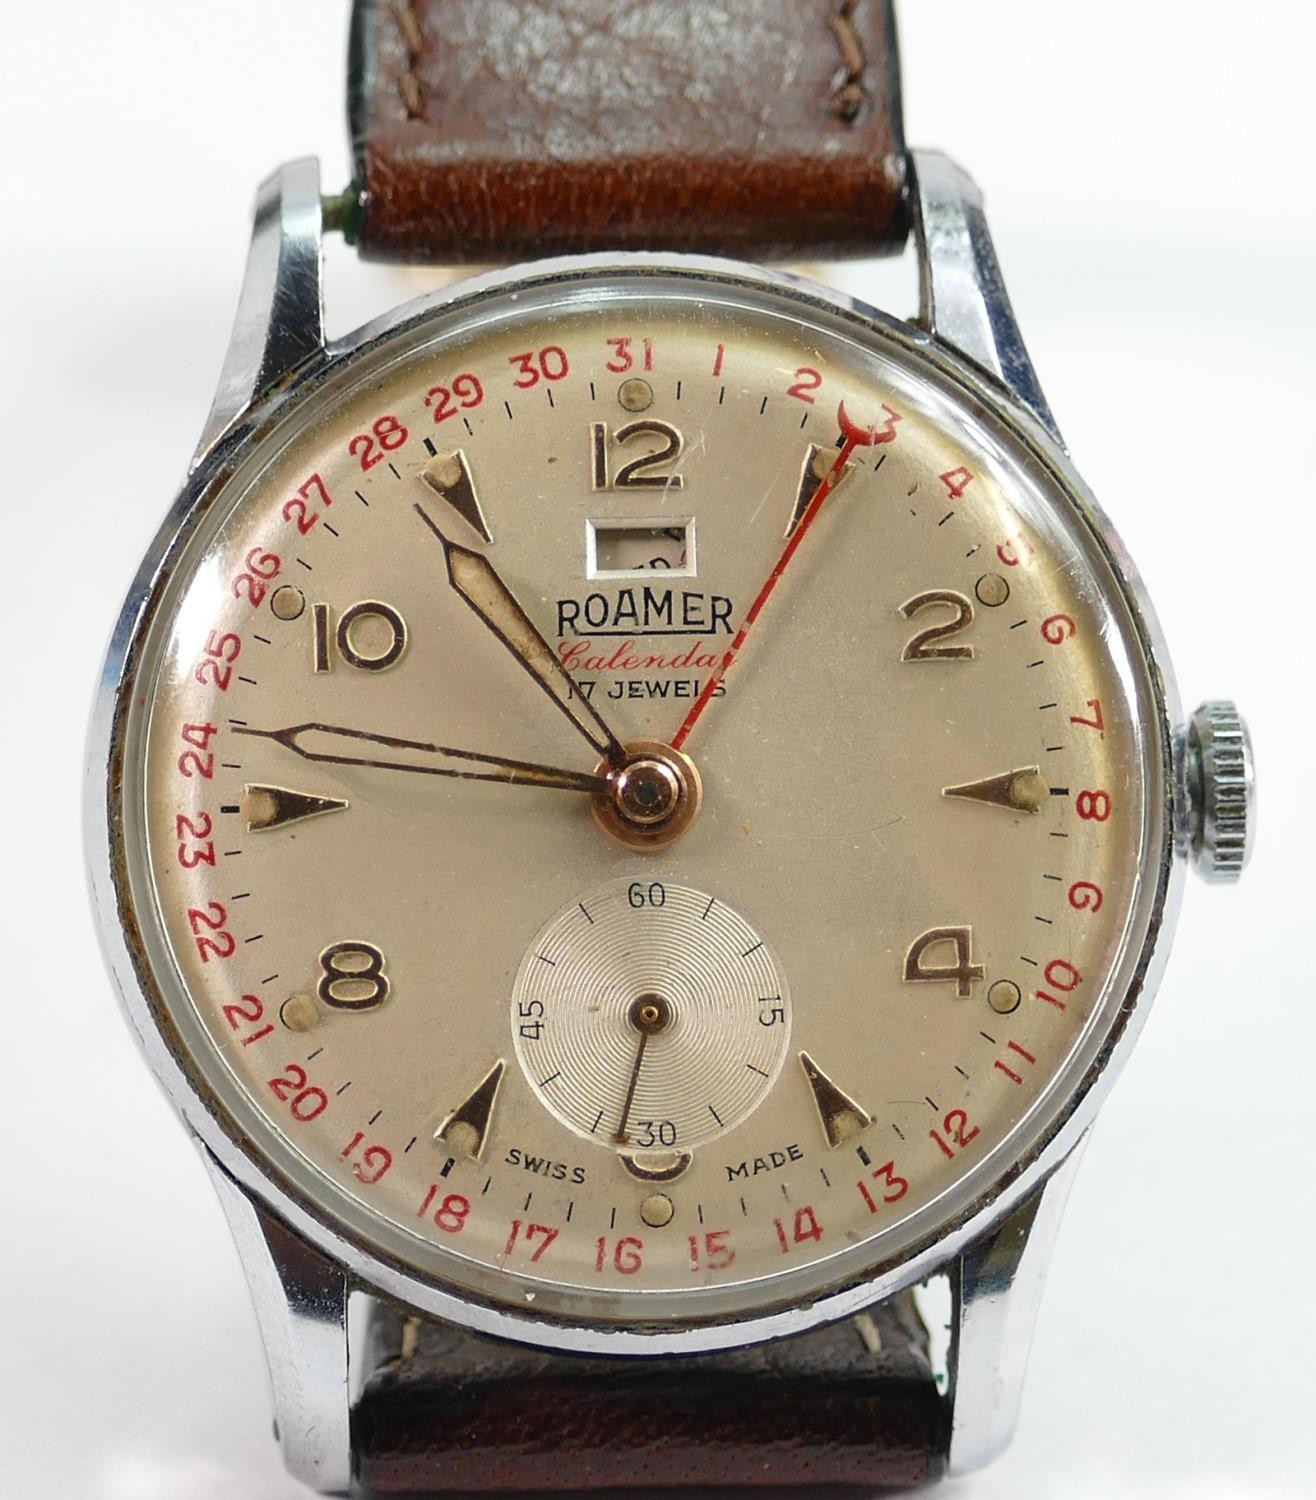 Roamer Calendar 17 jewel gents wrist watch circa 1950s: Winds, ticks, hands set and runs fully down.